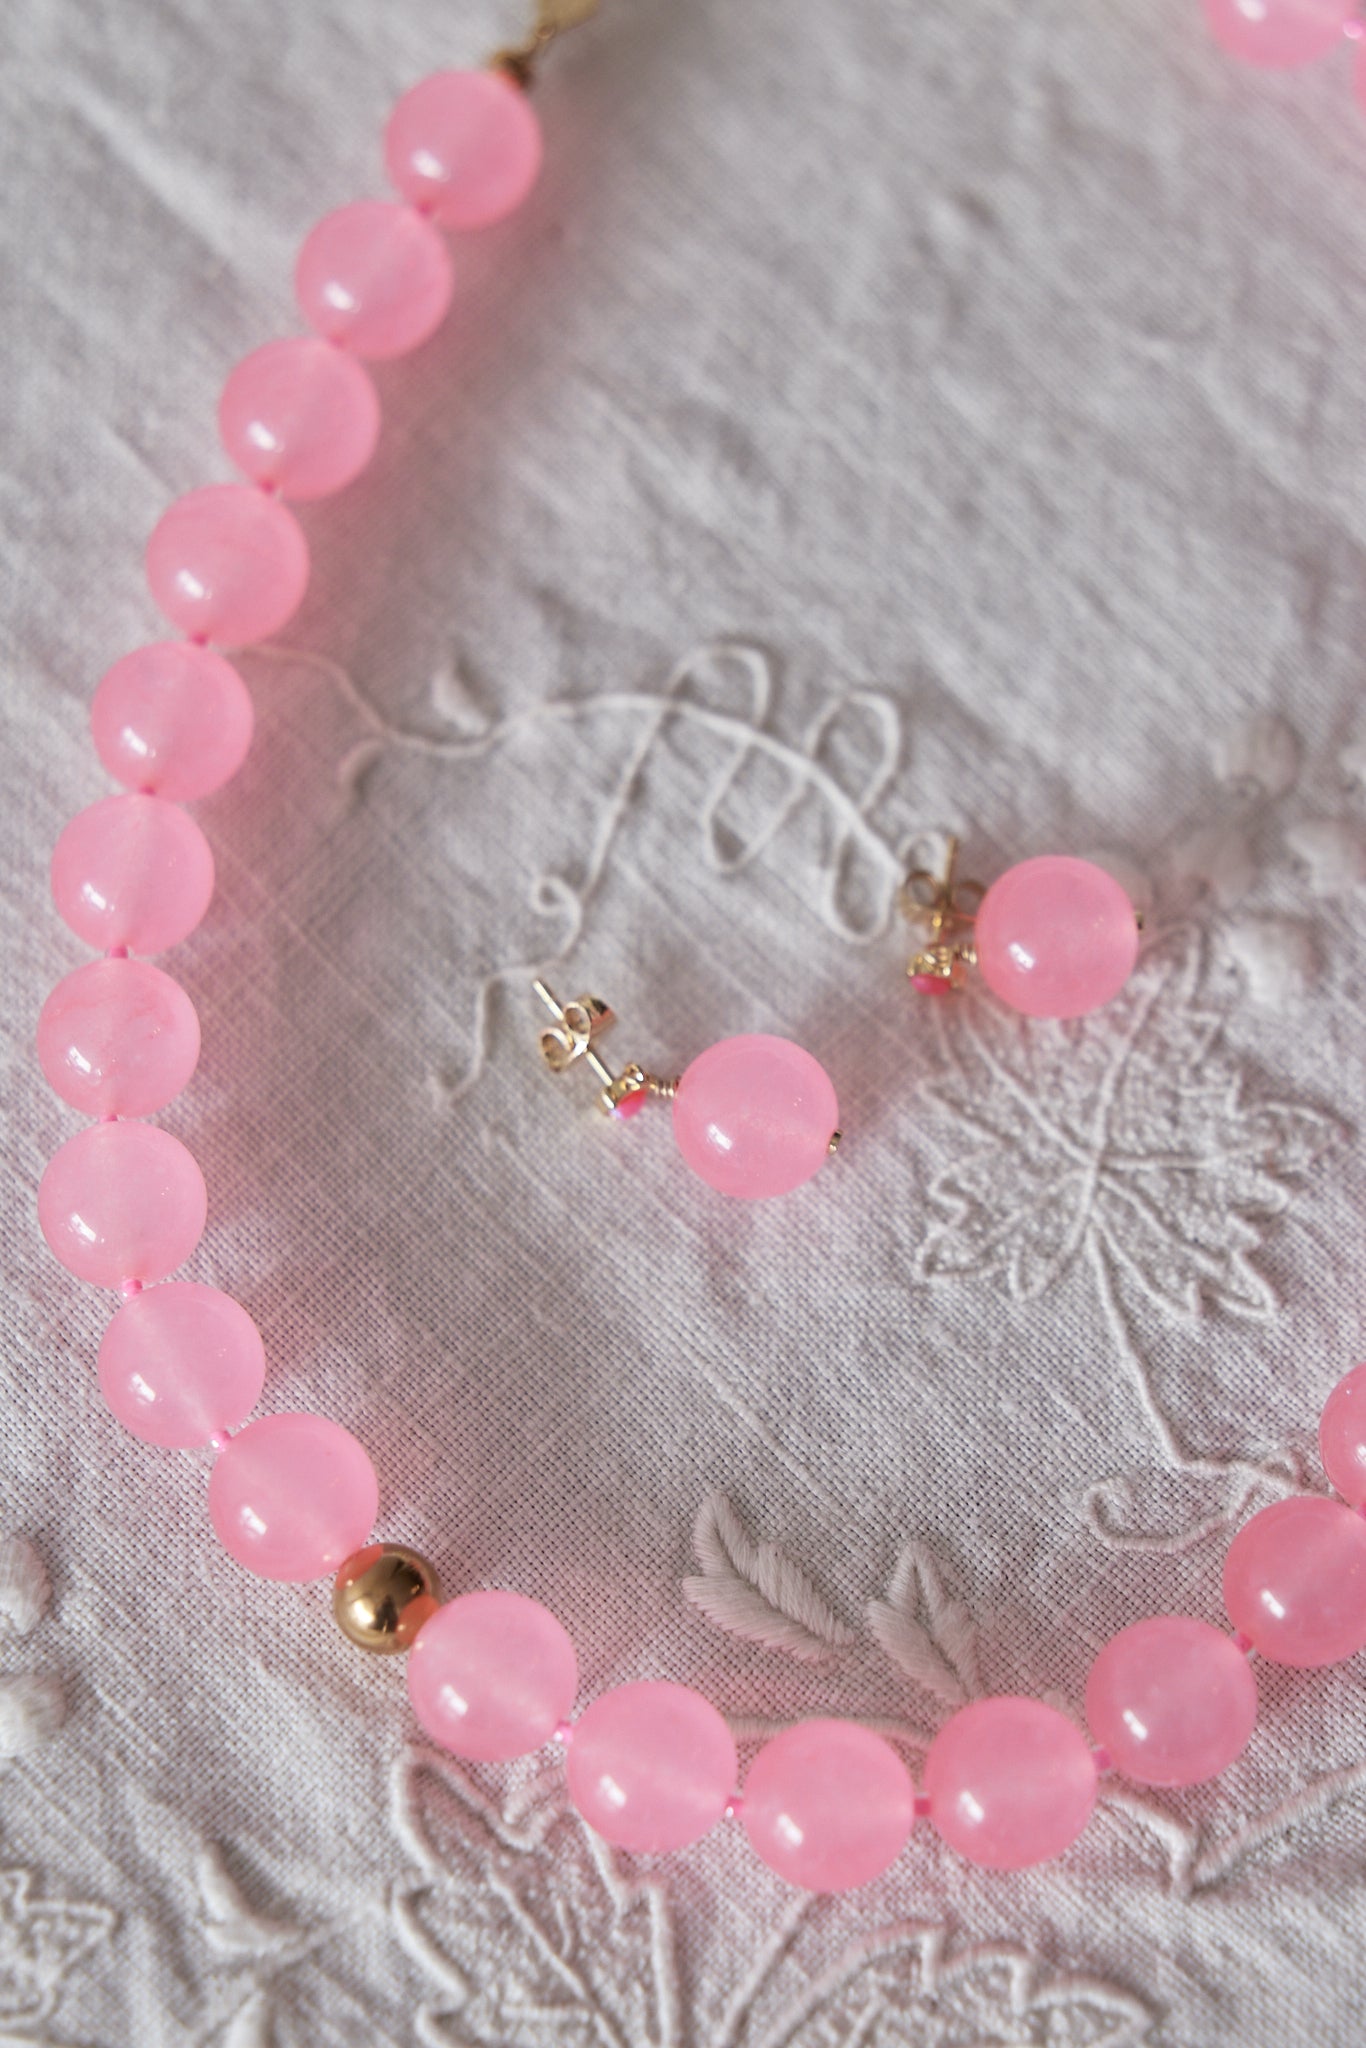 
                  
                    Pink Bubbles Necklace
                  
                